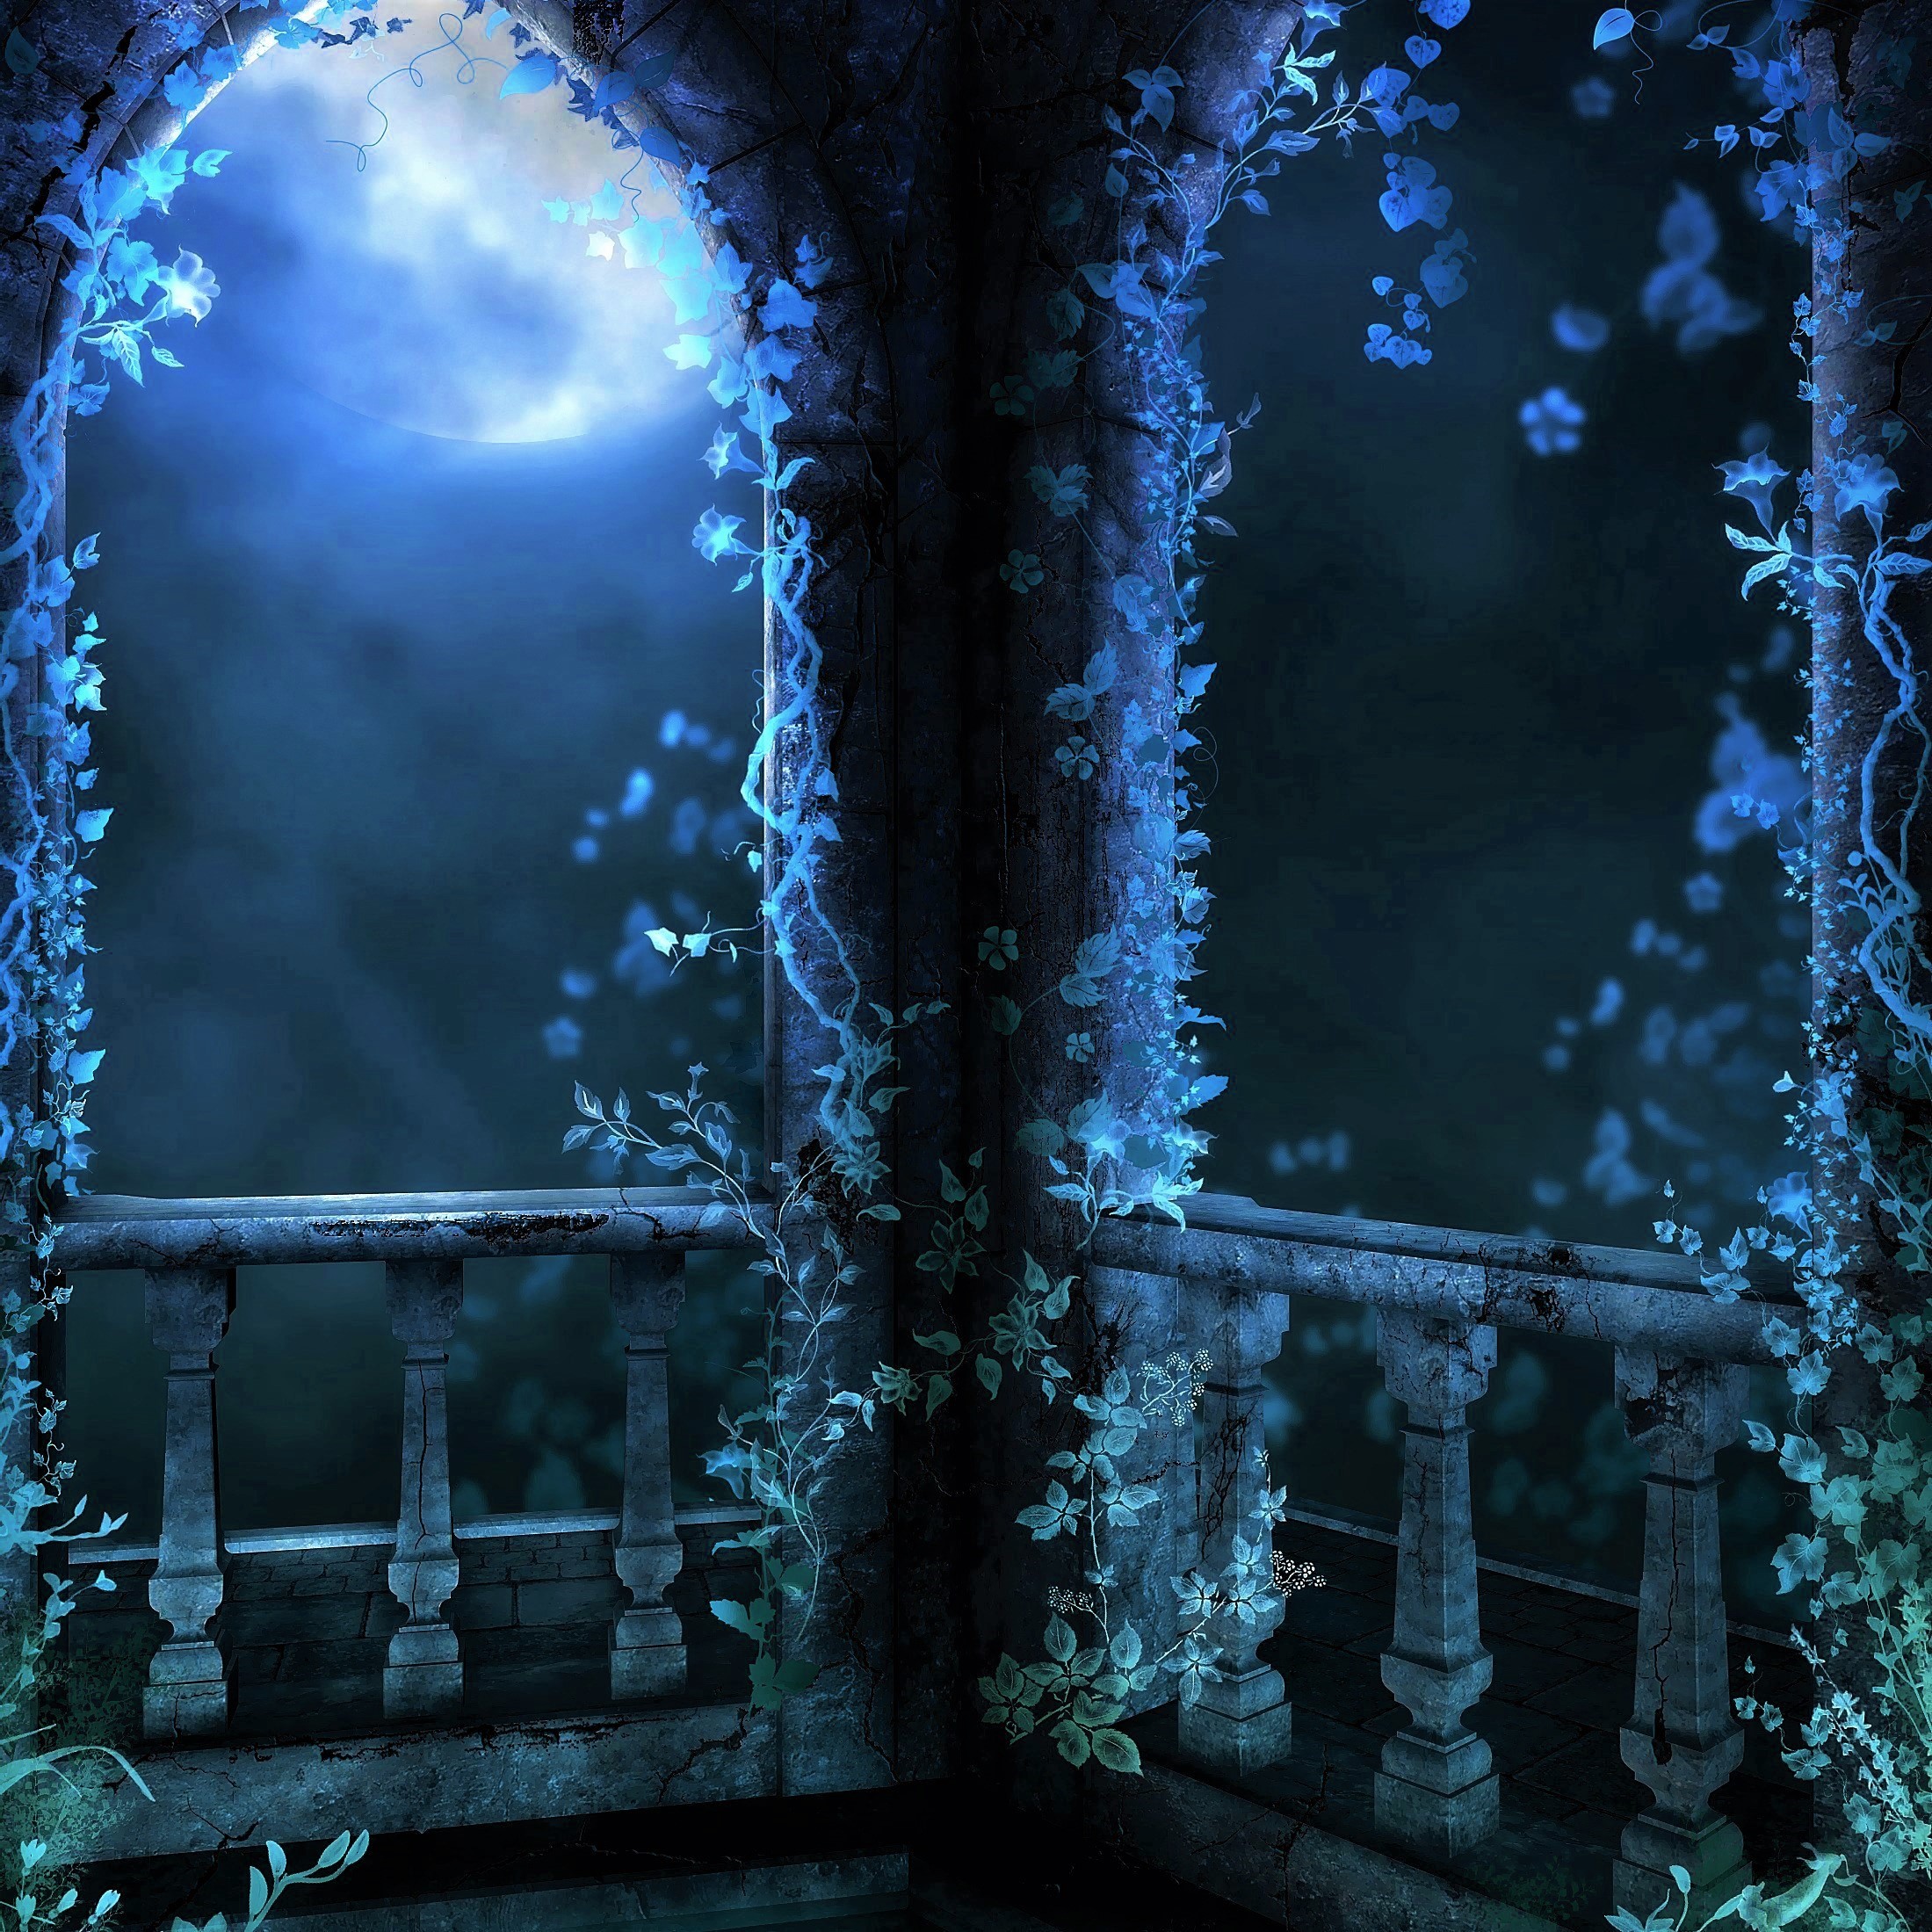 Blue Terrace in the Moonlight